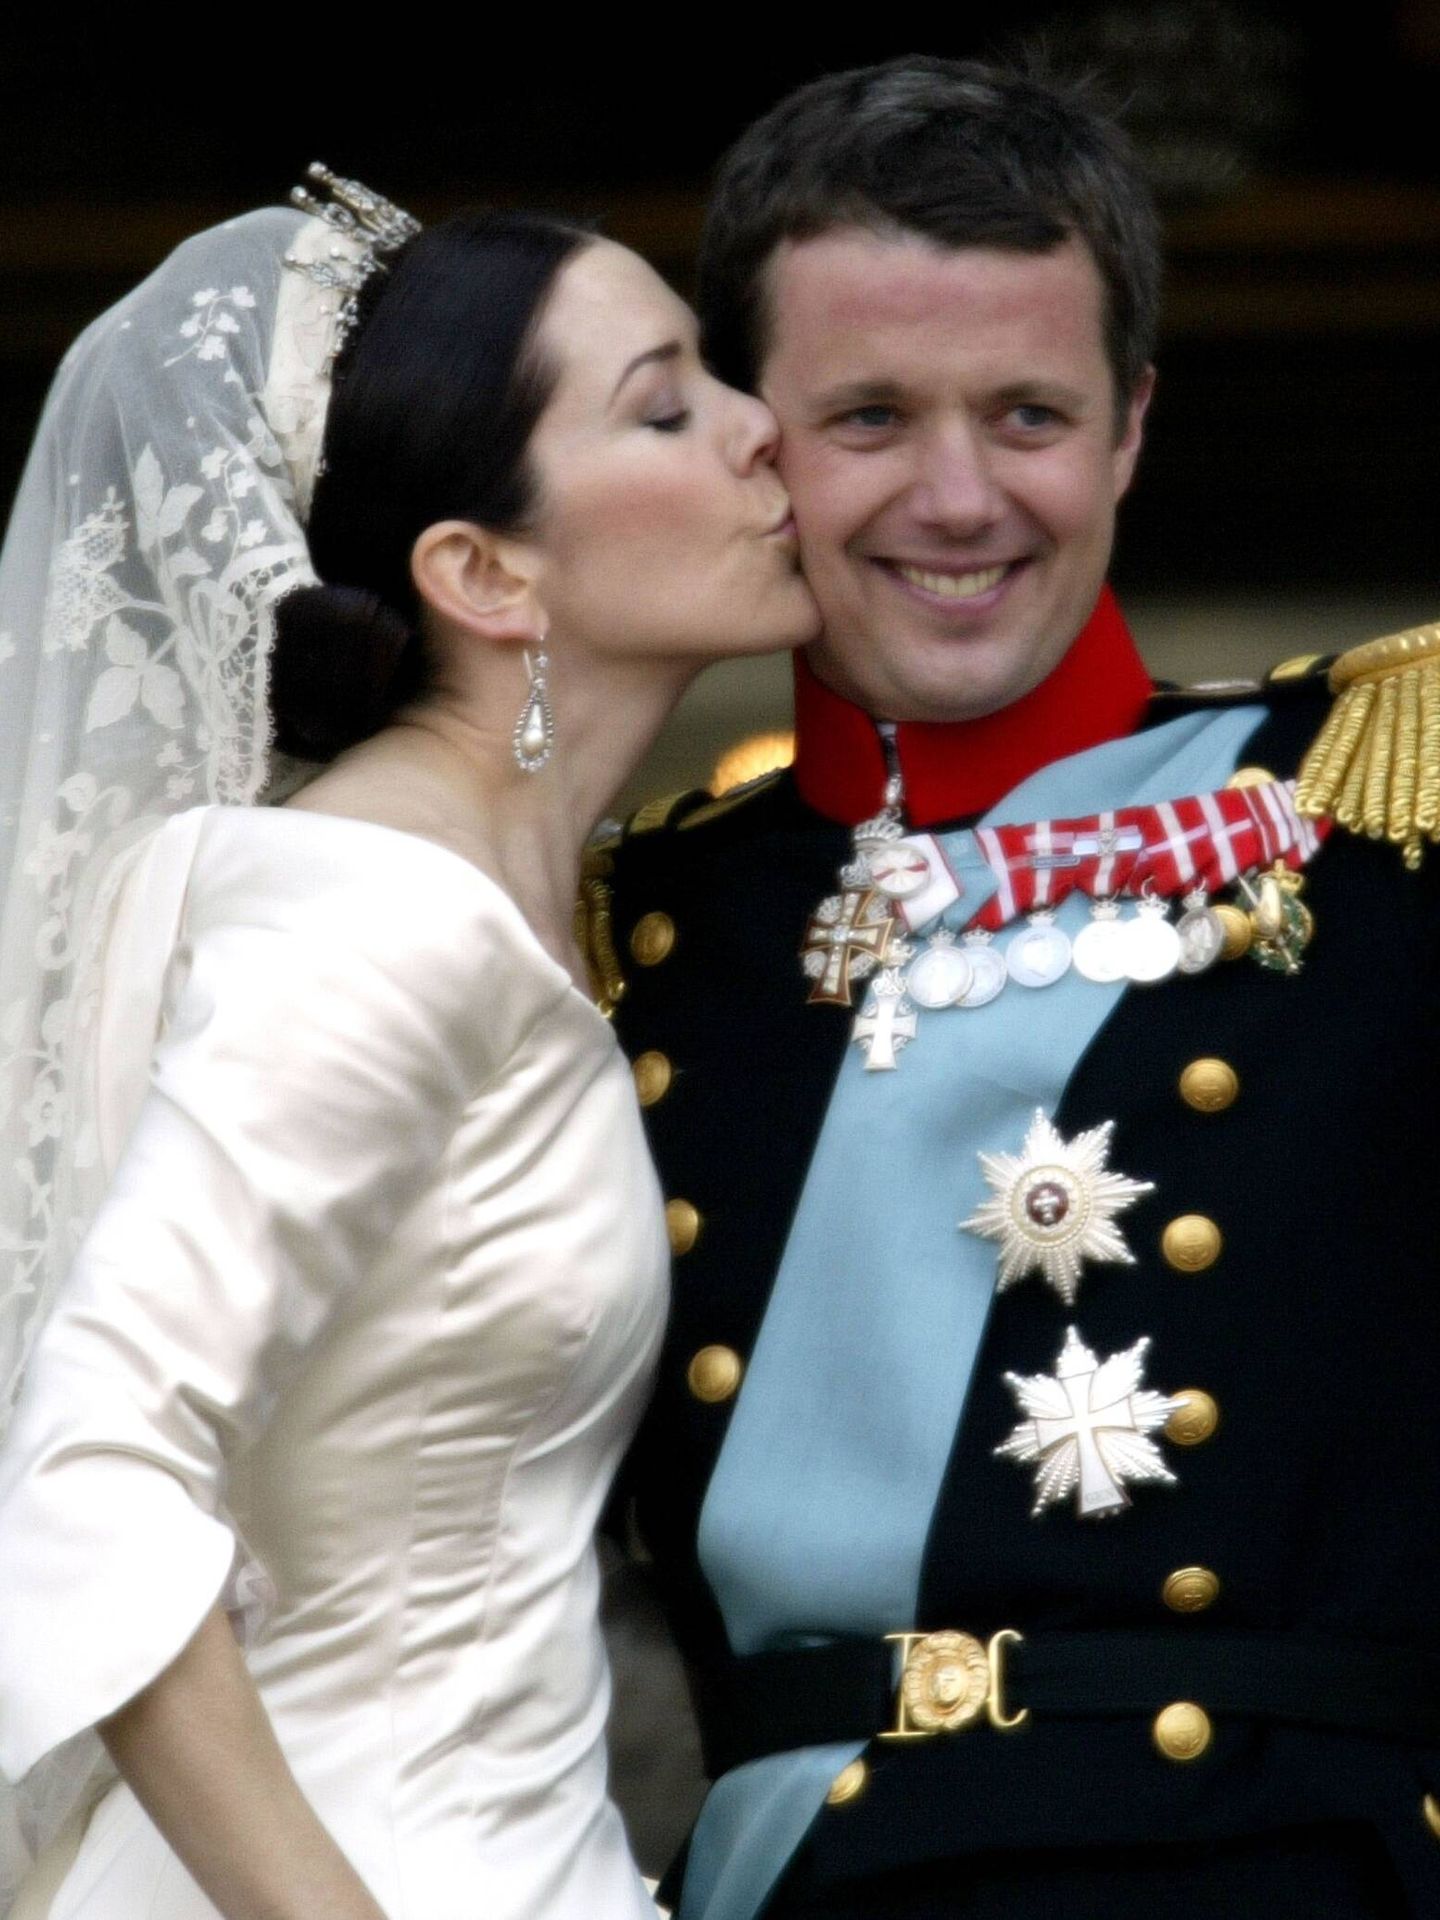 La boda de Mary y Federico, en 2004. (Getty)